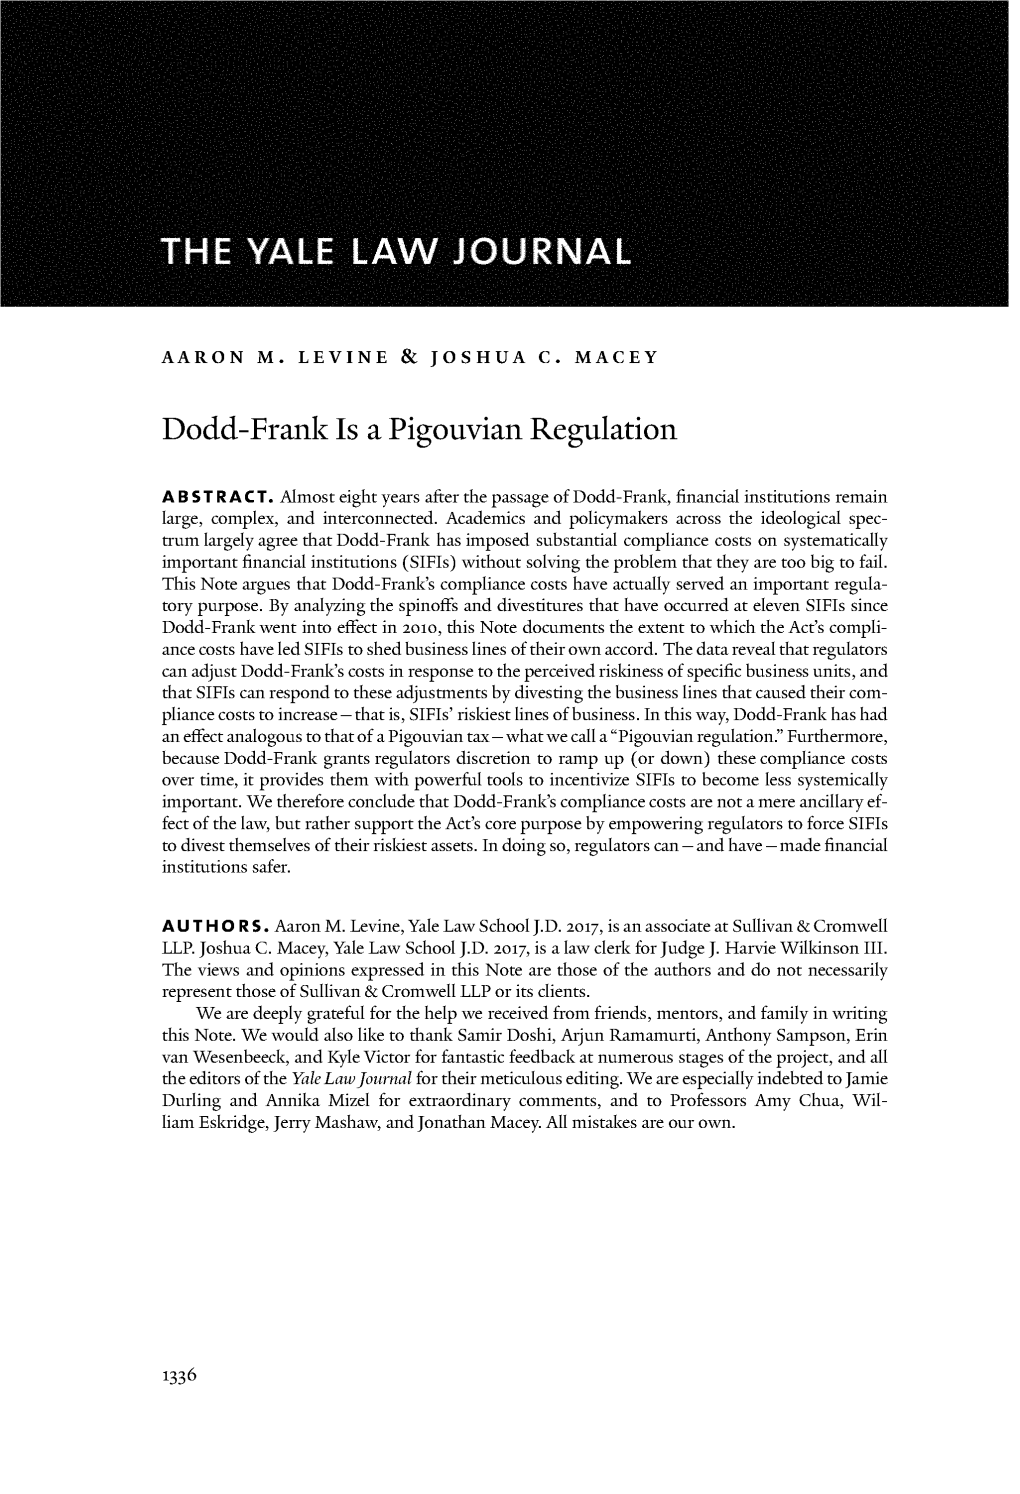 Dodd-Frank Is a Pigouvian Regulation